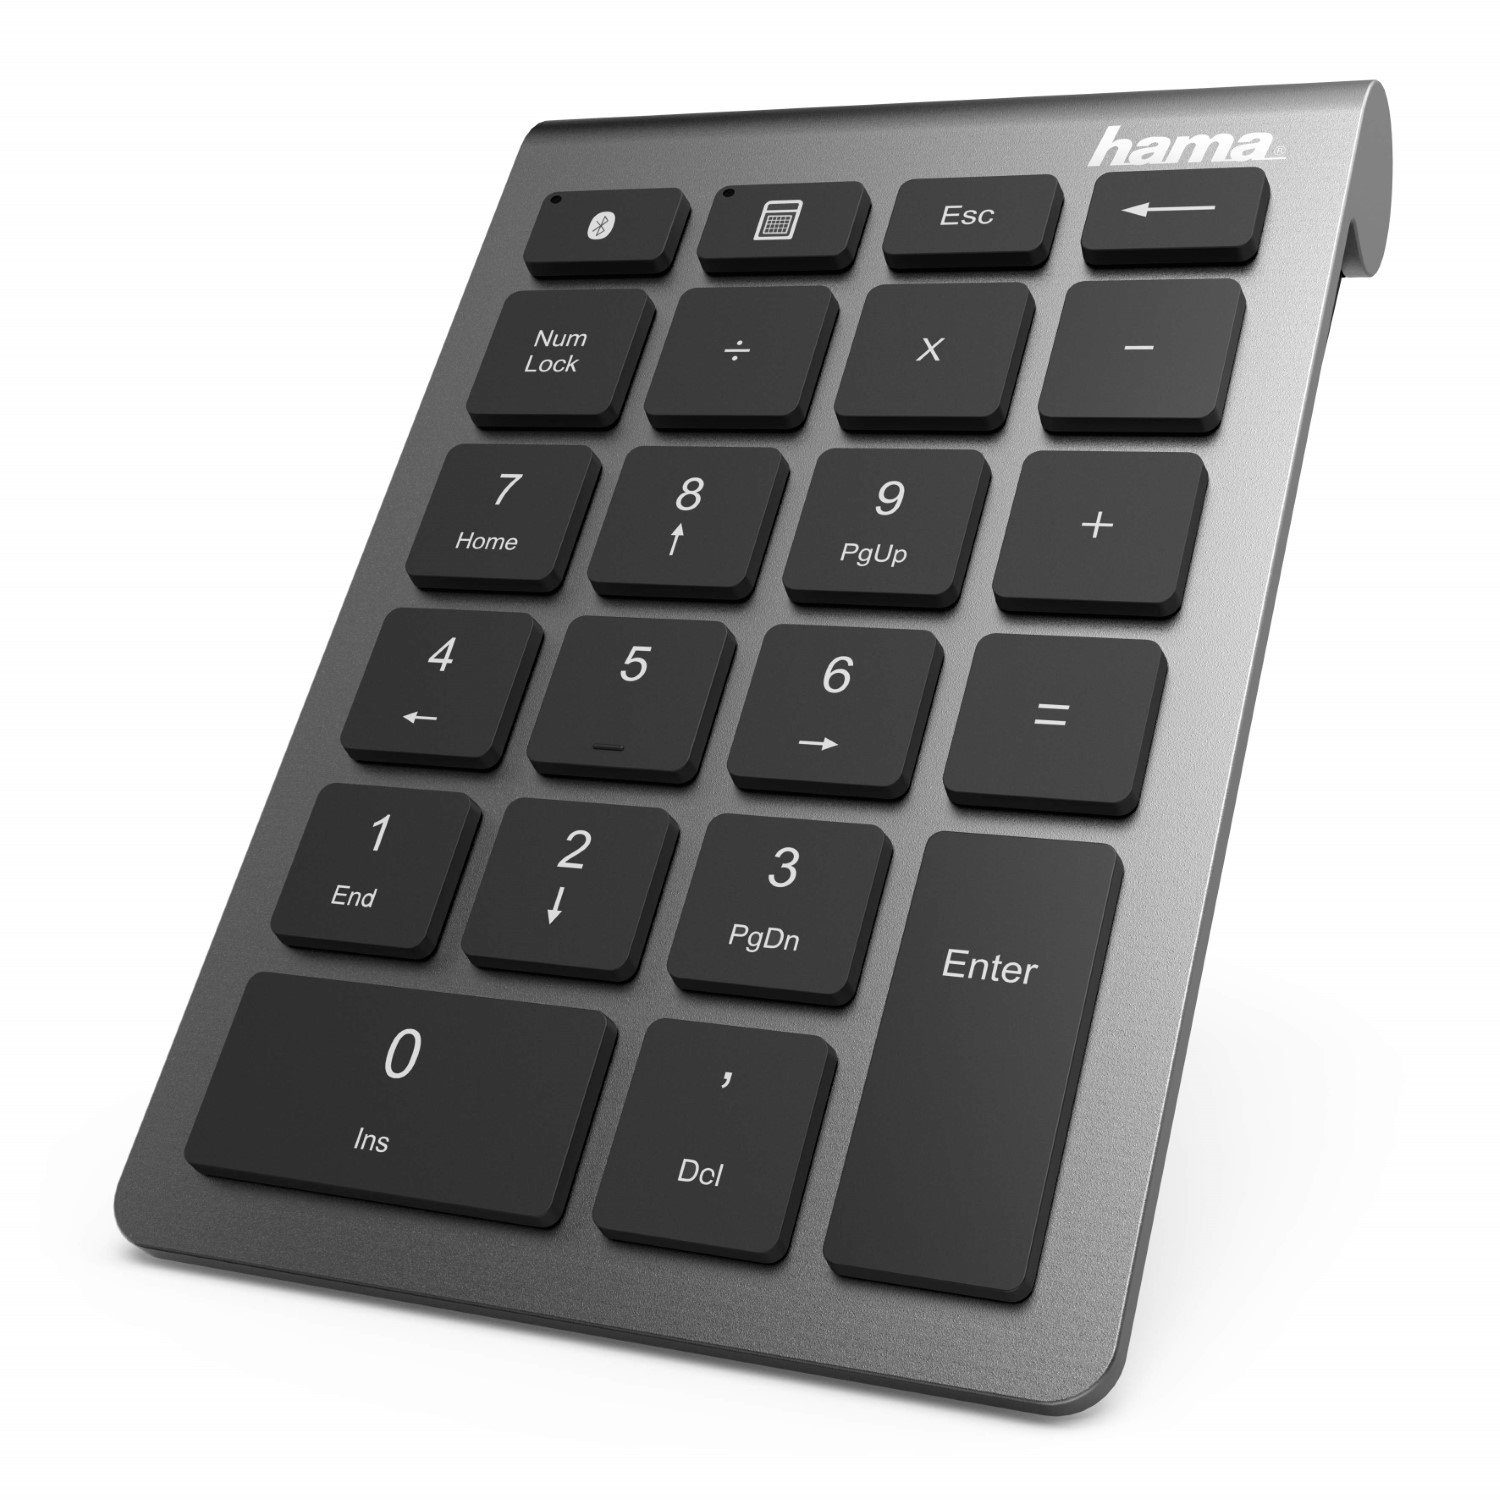 Okion ONE PAD Keypad Calculator externe Ziffernblock Taschenrechner Nummernblock 